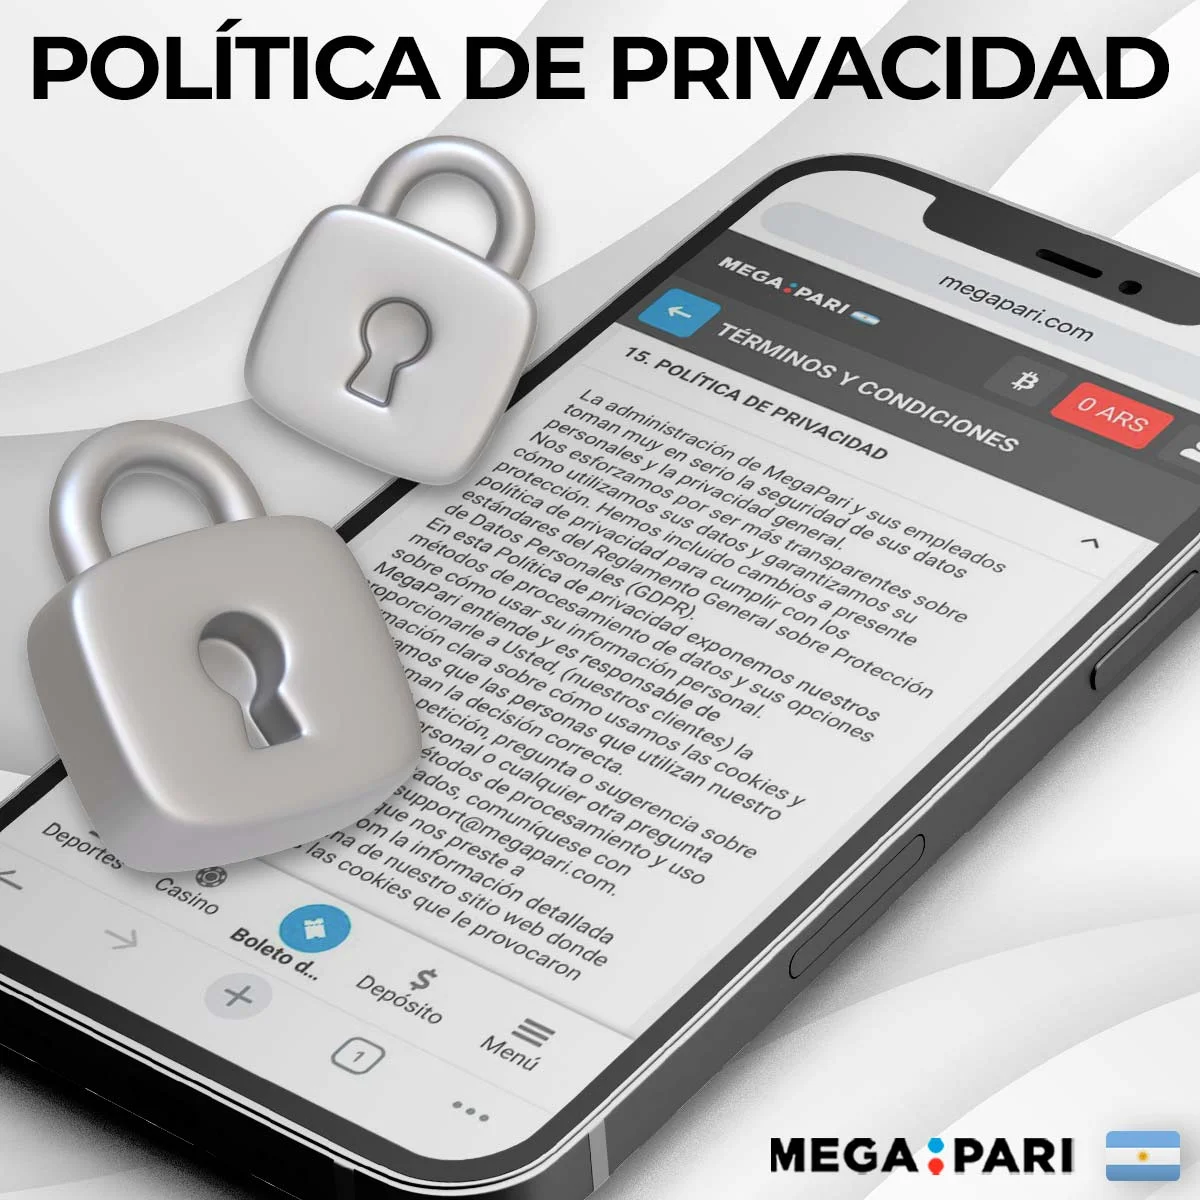 ¿Cómo funciona la política de privacidad en la plataforma Megapari?